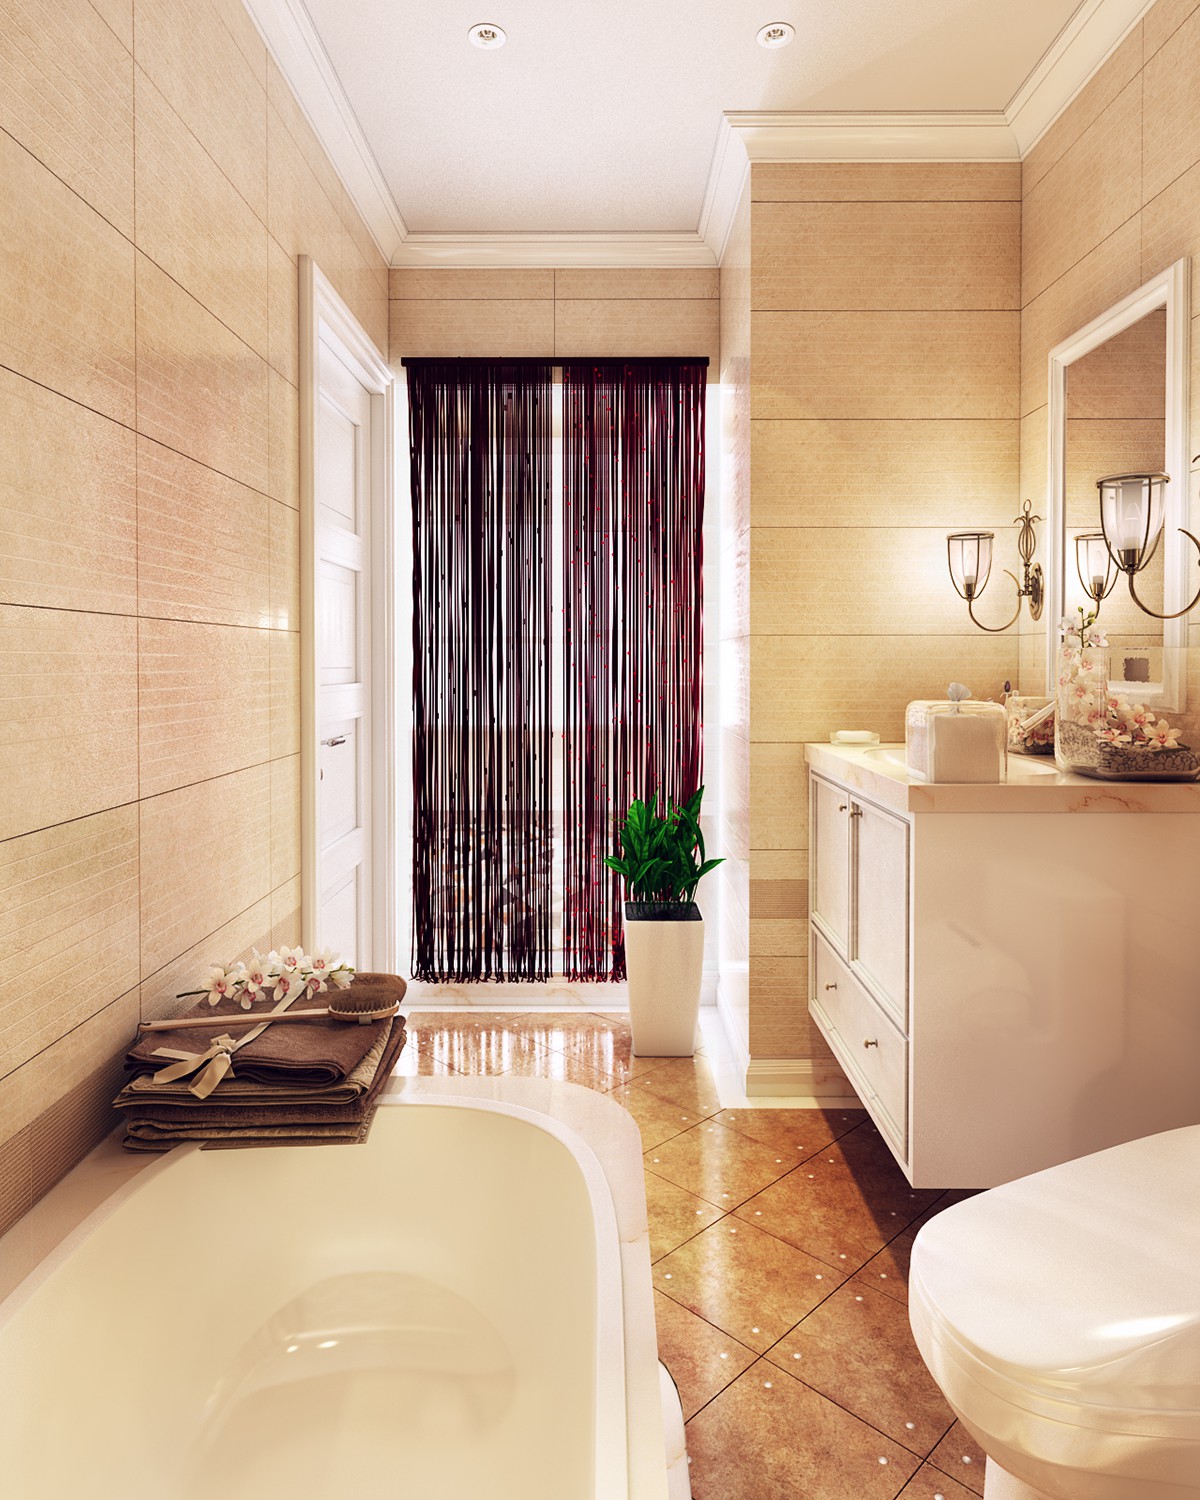 Hình ảnh phòng tắm trong căn hộ bán cổ điển với tường ốp đá màu be, bồn tắm nằm, đèn chùm trang trí